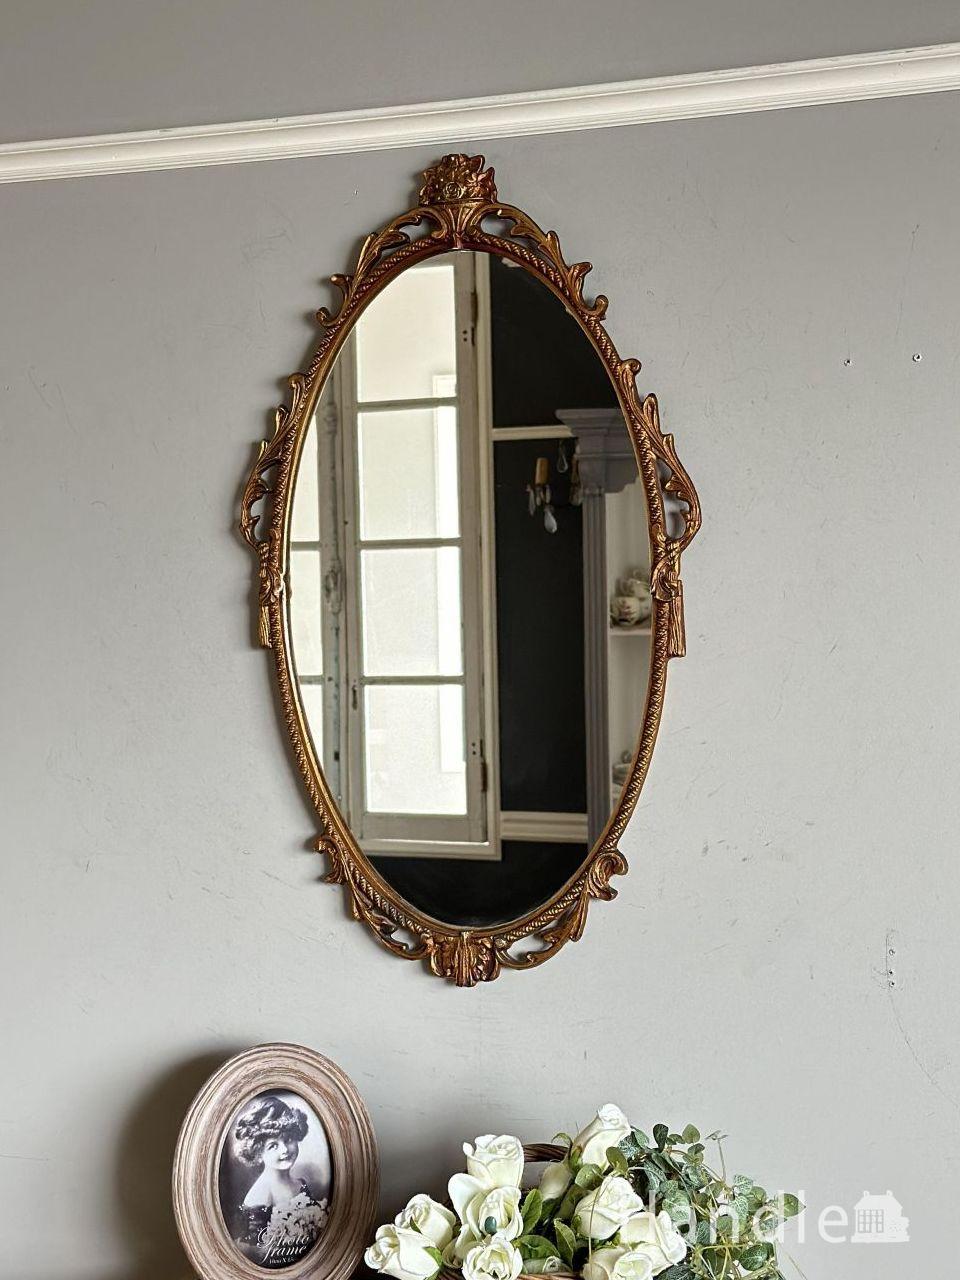 インテリア小物アンティークミラー壁掛け - 鏡